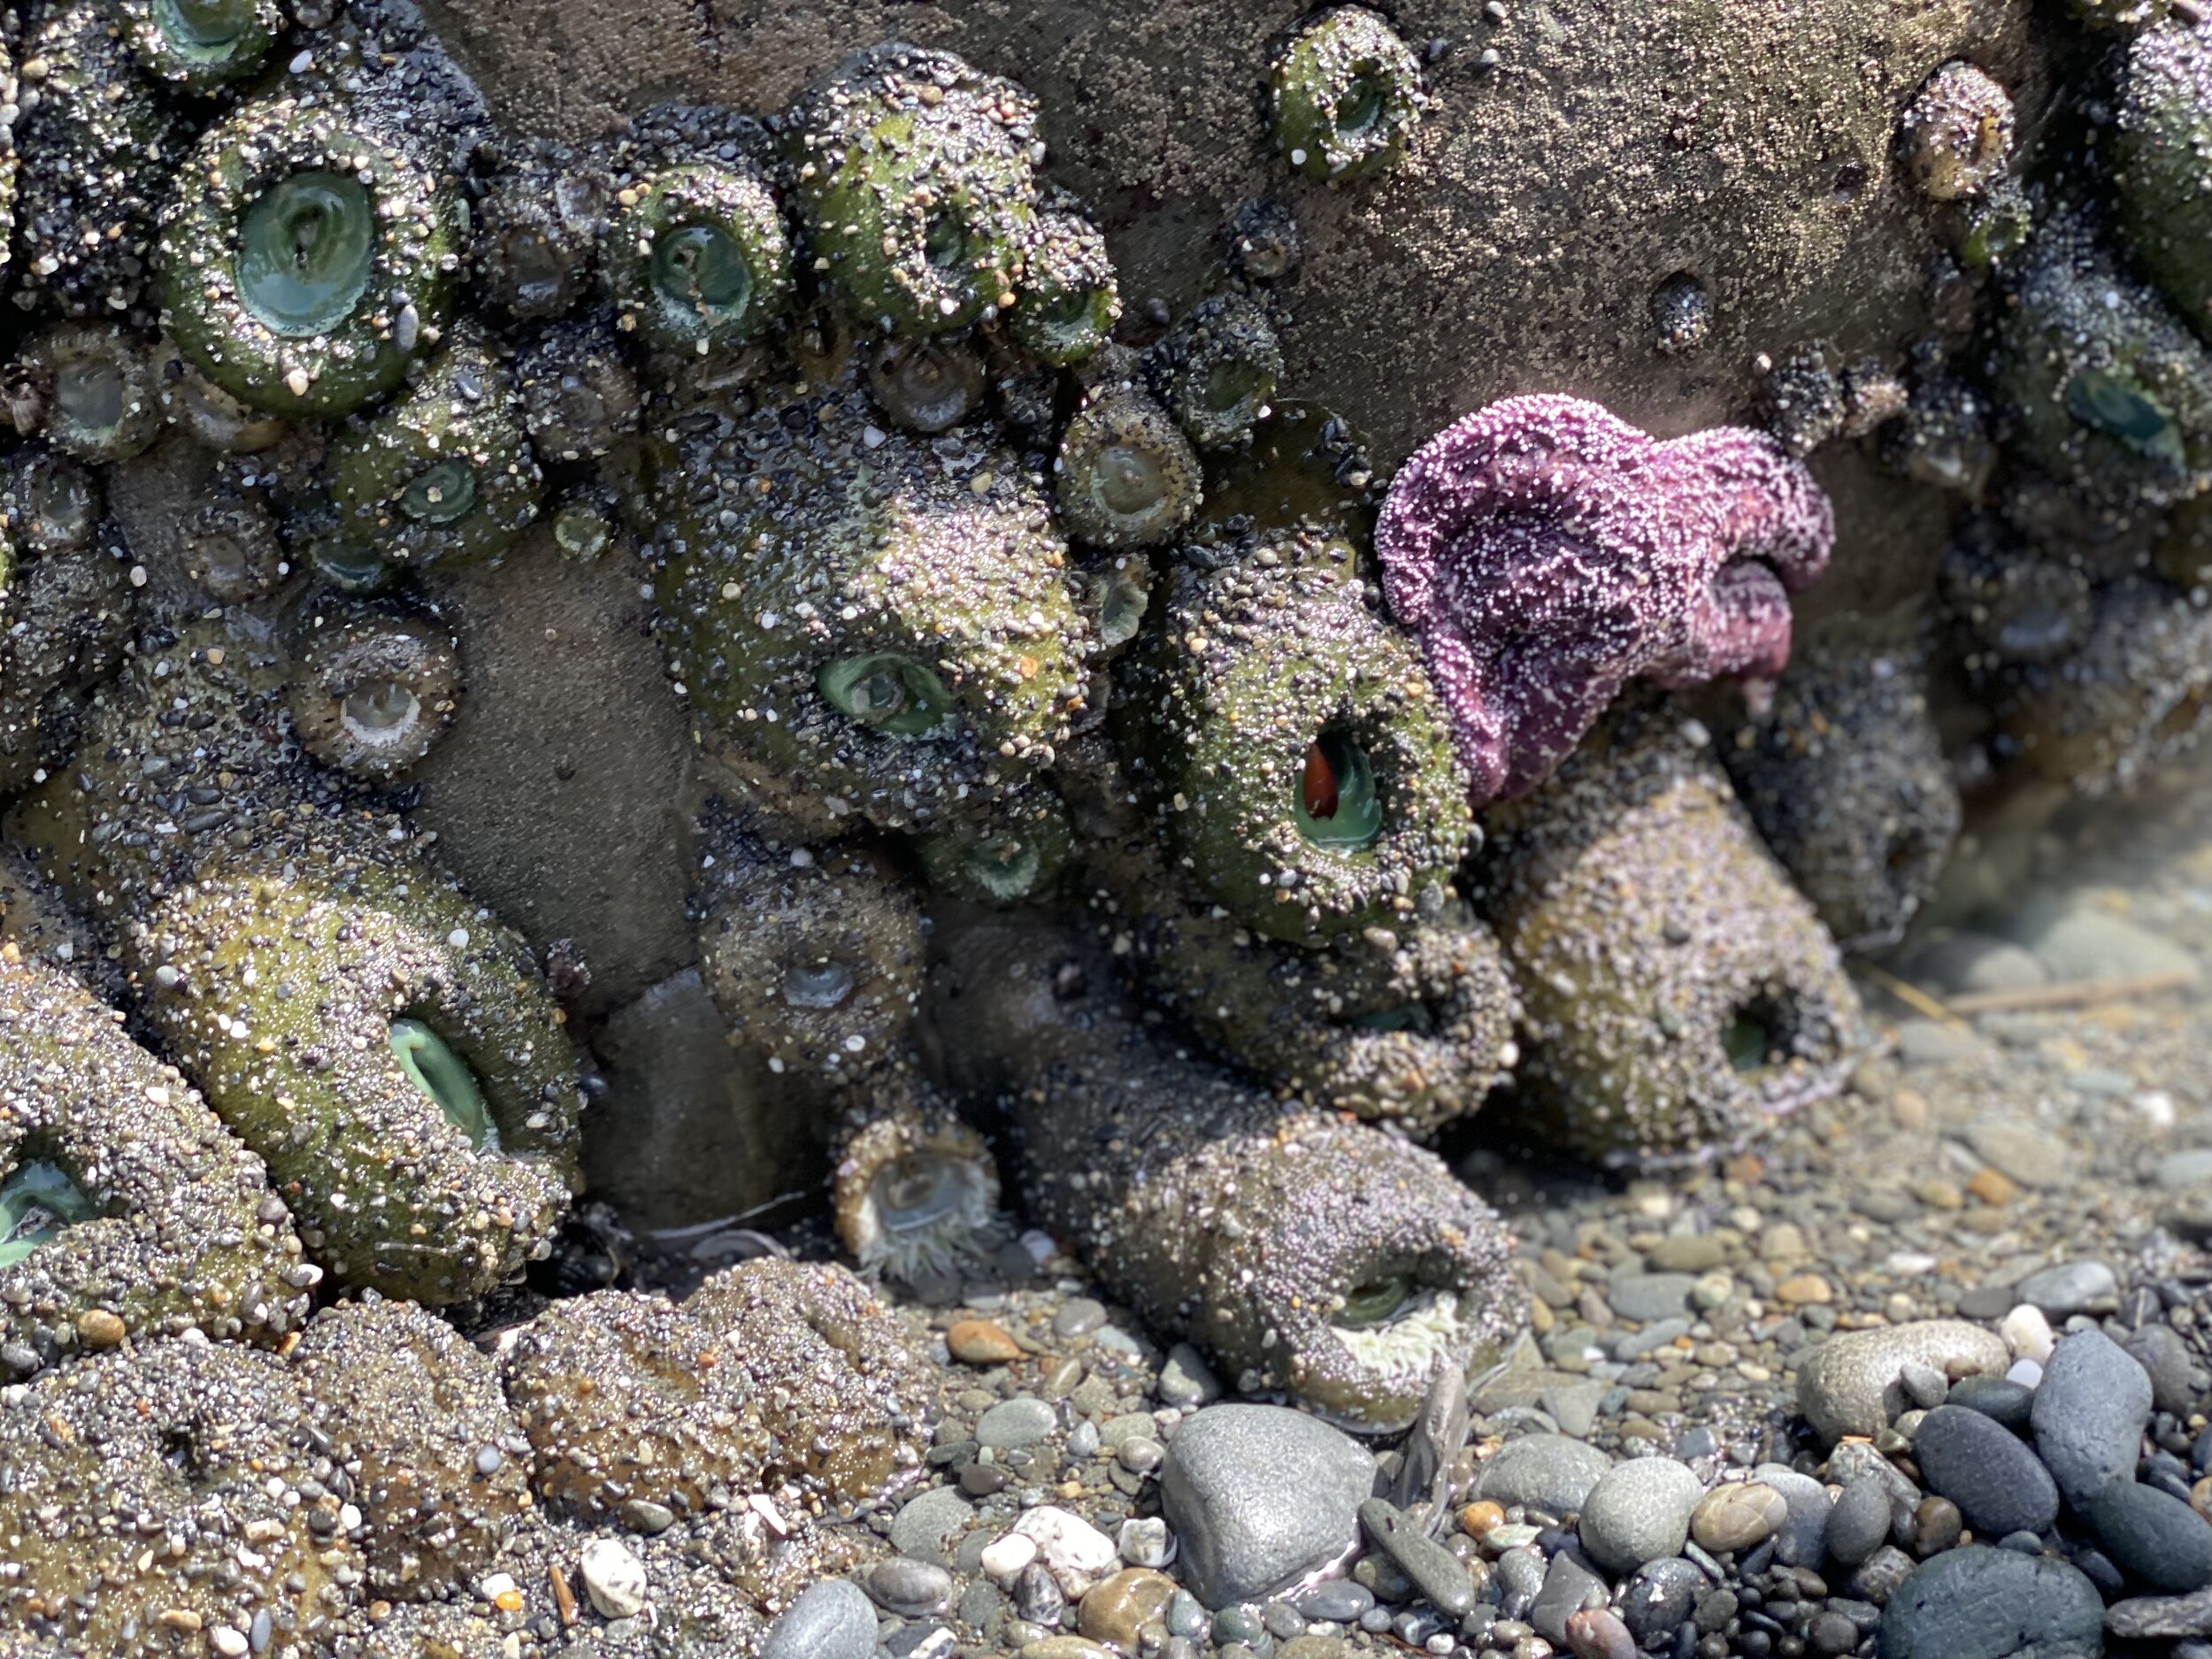 Purple sea star amidst more sea anemones